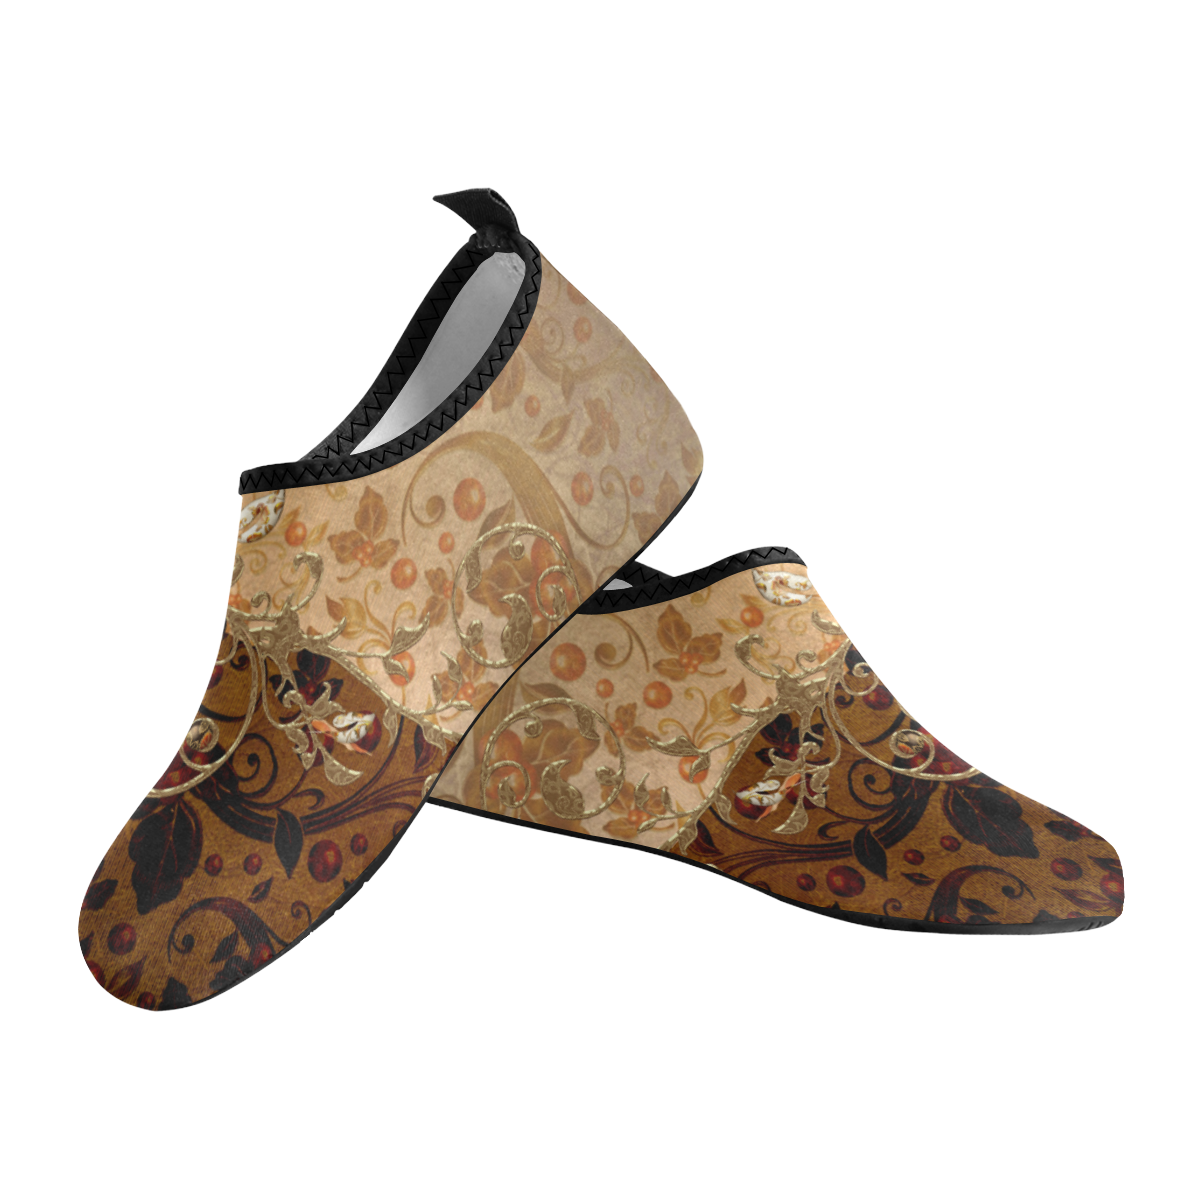 Wonderful decorative floral design Men's Slip-On Water Shoes (Model 056)